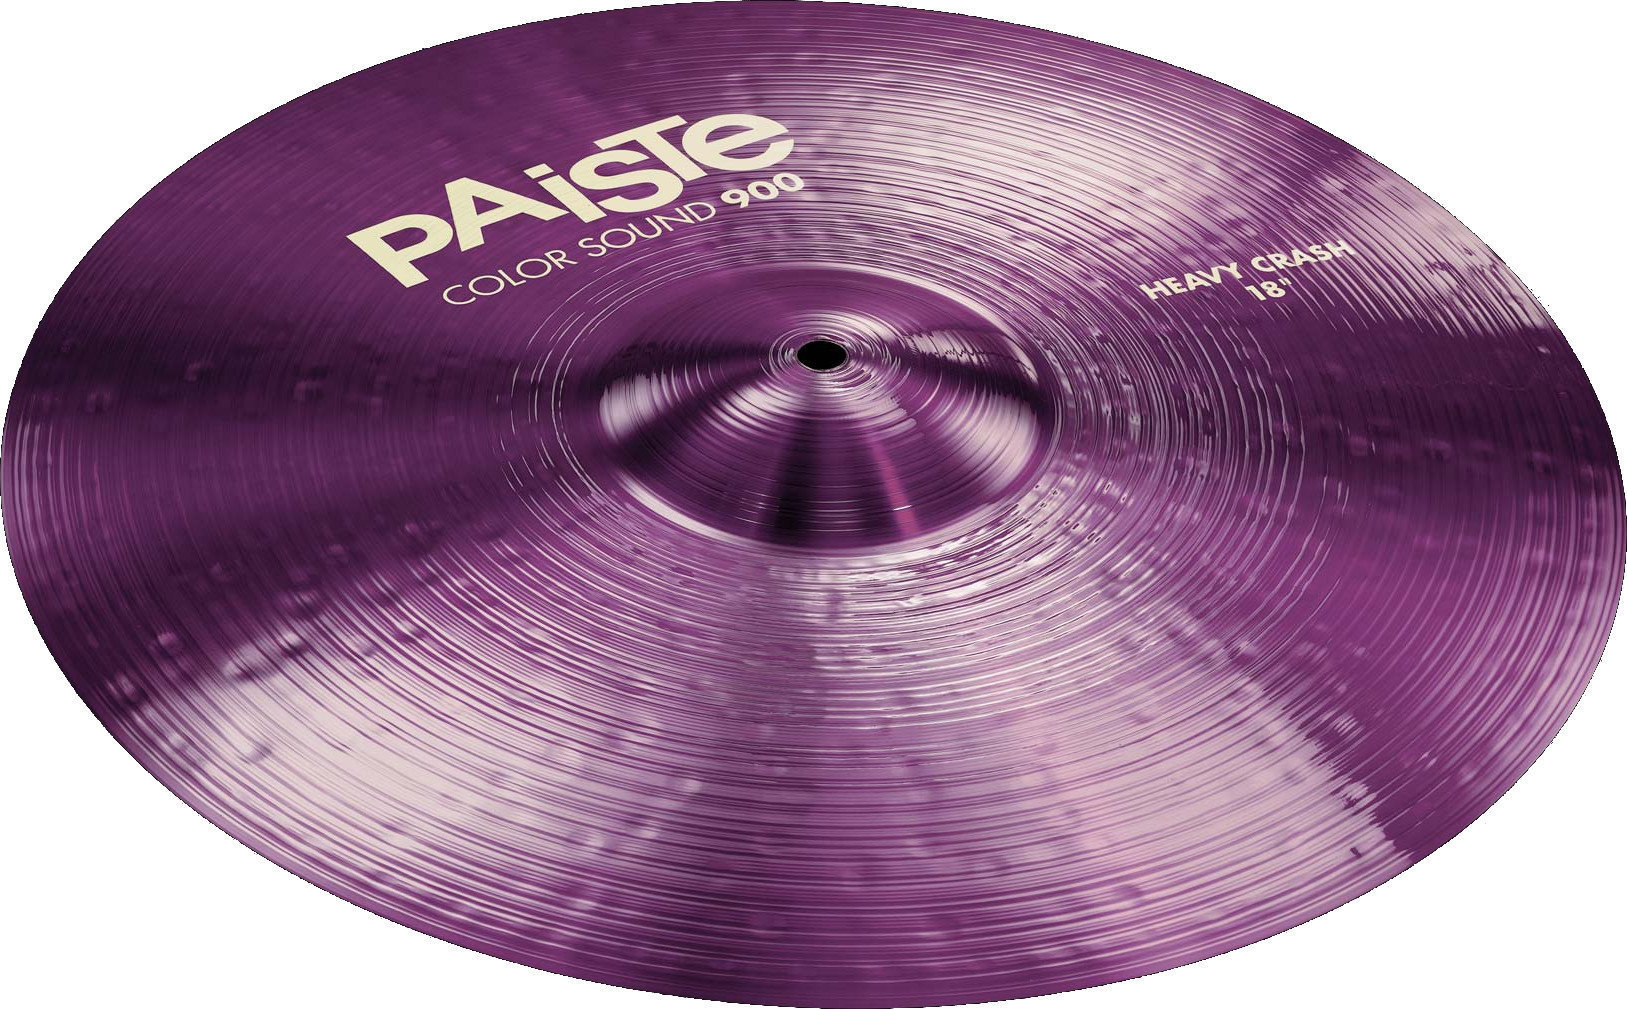 Crash Cymbal Paiste Color Sound 900  Heavy Crash Cymbal 17" Violet